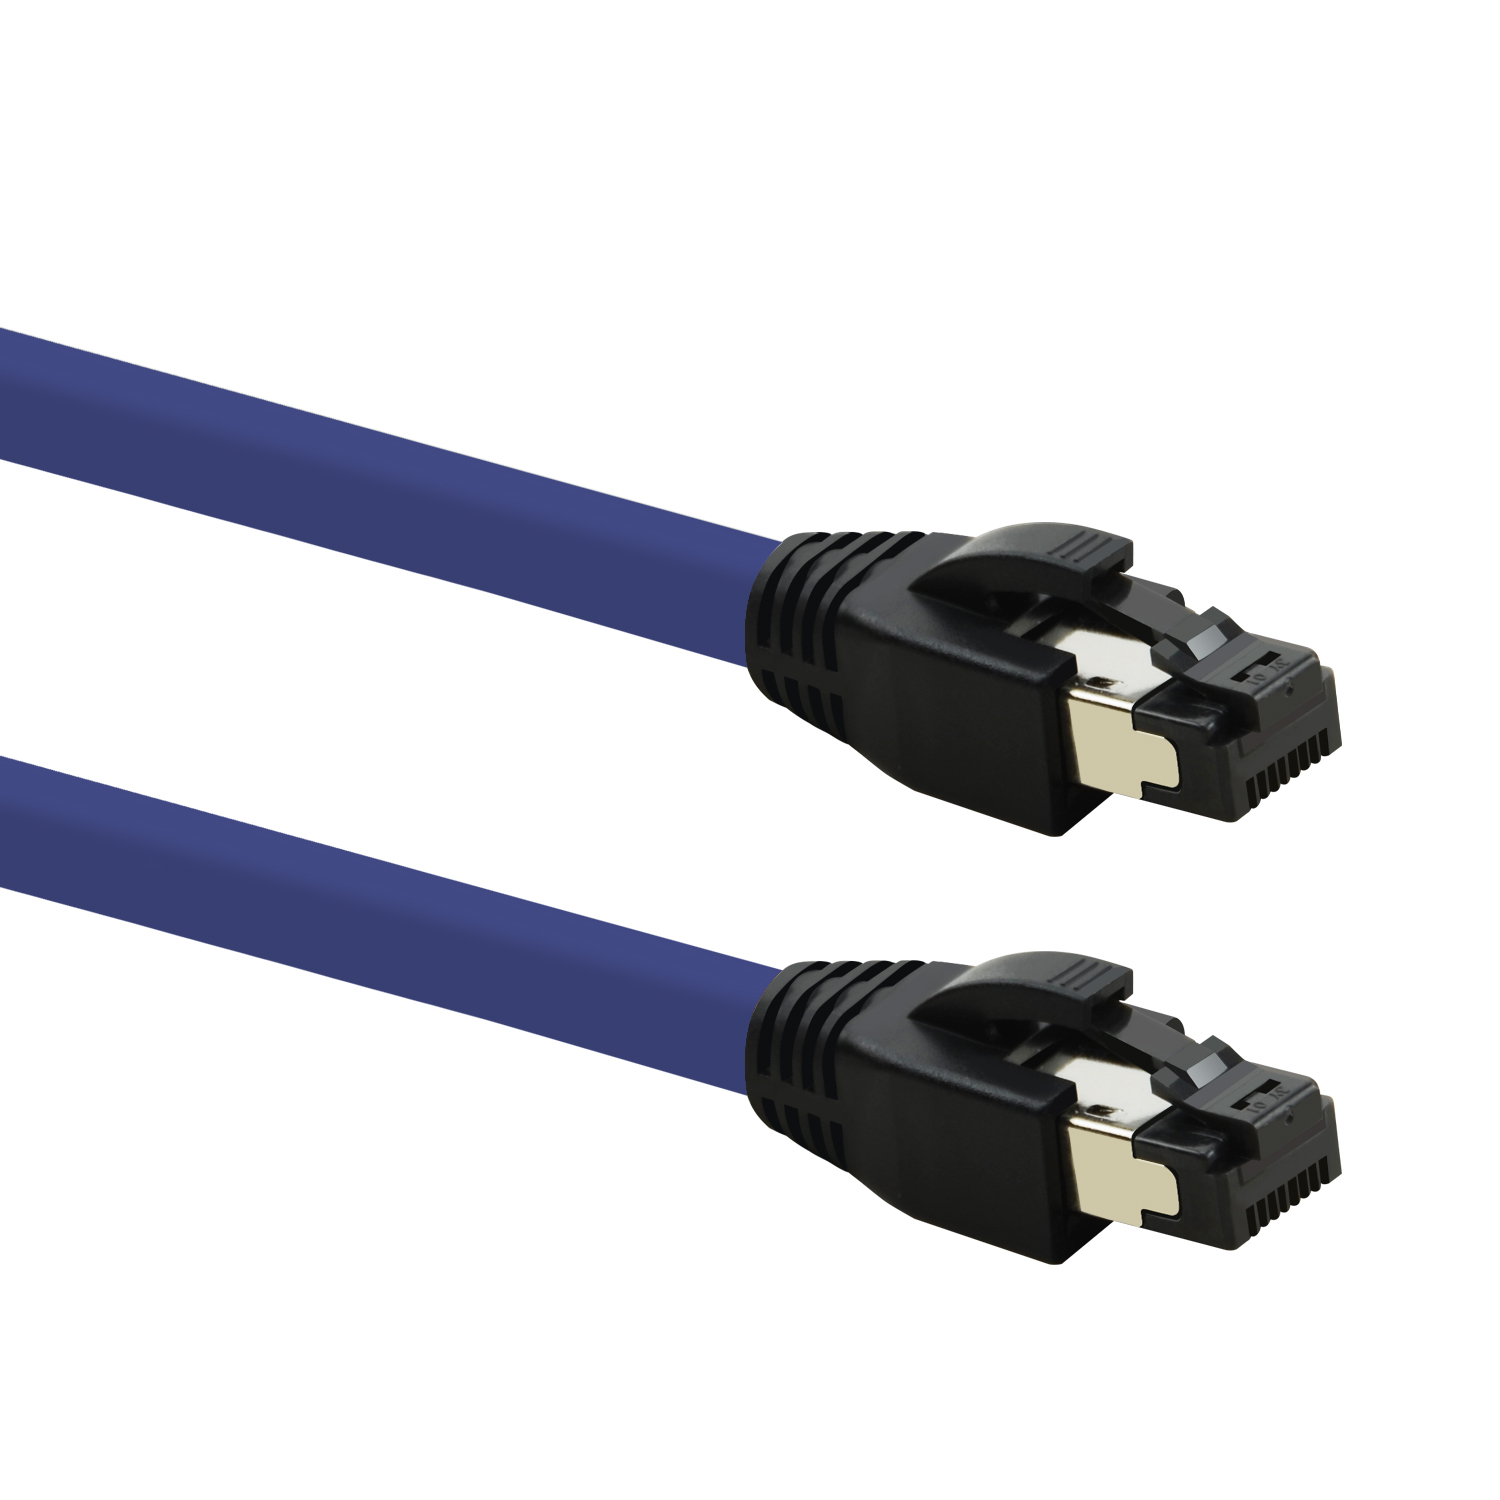 TPFNET 3m Patchkabel / 40 violett, 3 S/FTP Netzwerkkabel, m GBit, Netzwerkkabel